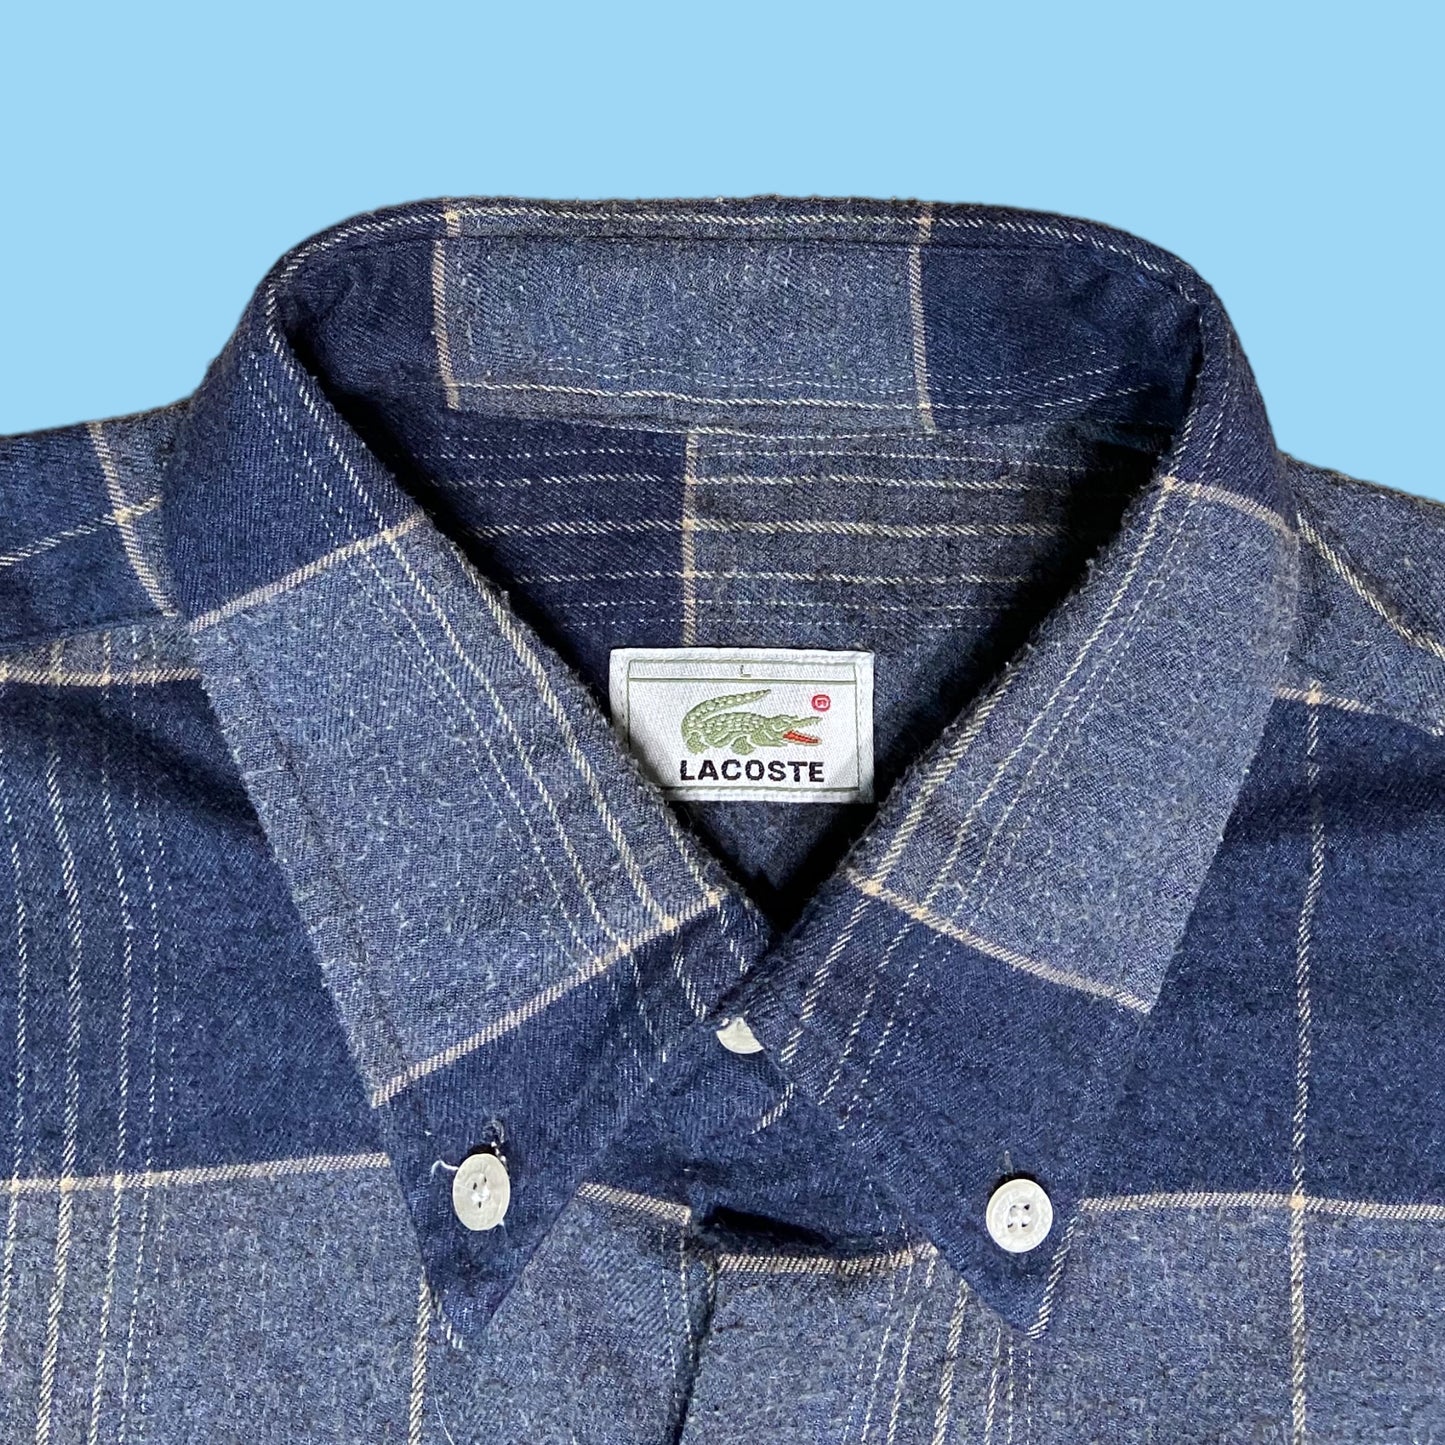 Vintage Lacoste flannel shirt - L